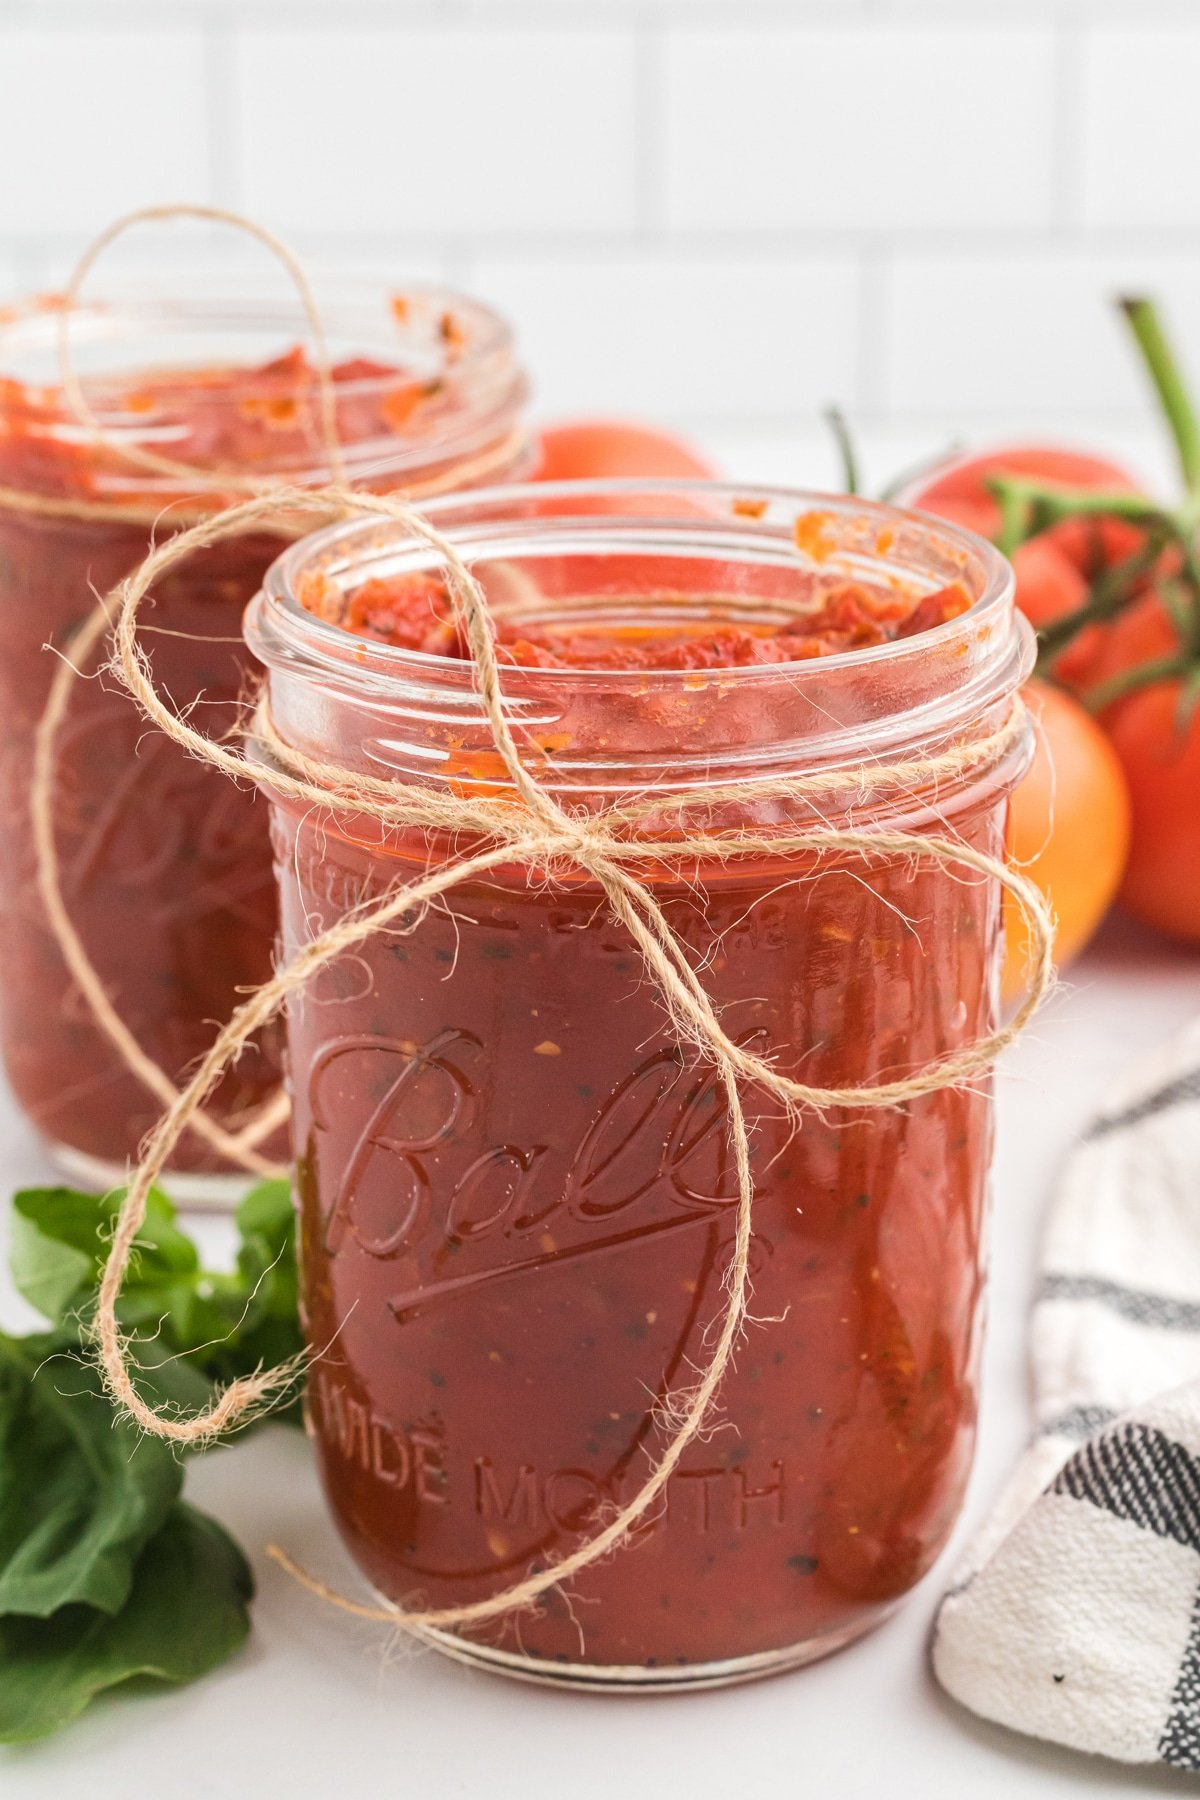 Marinara sauce in a glass jar